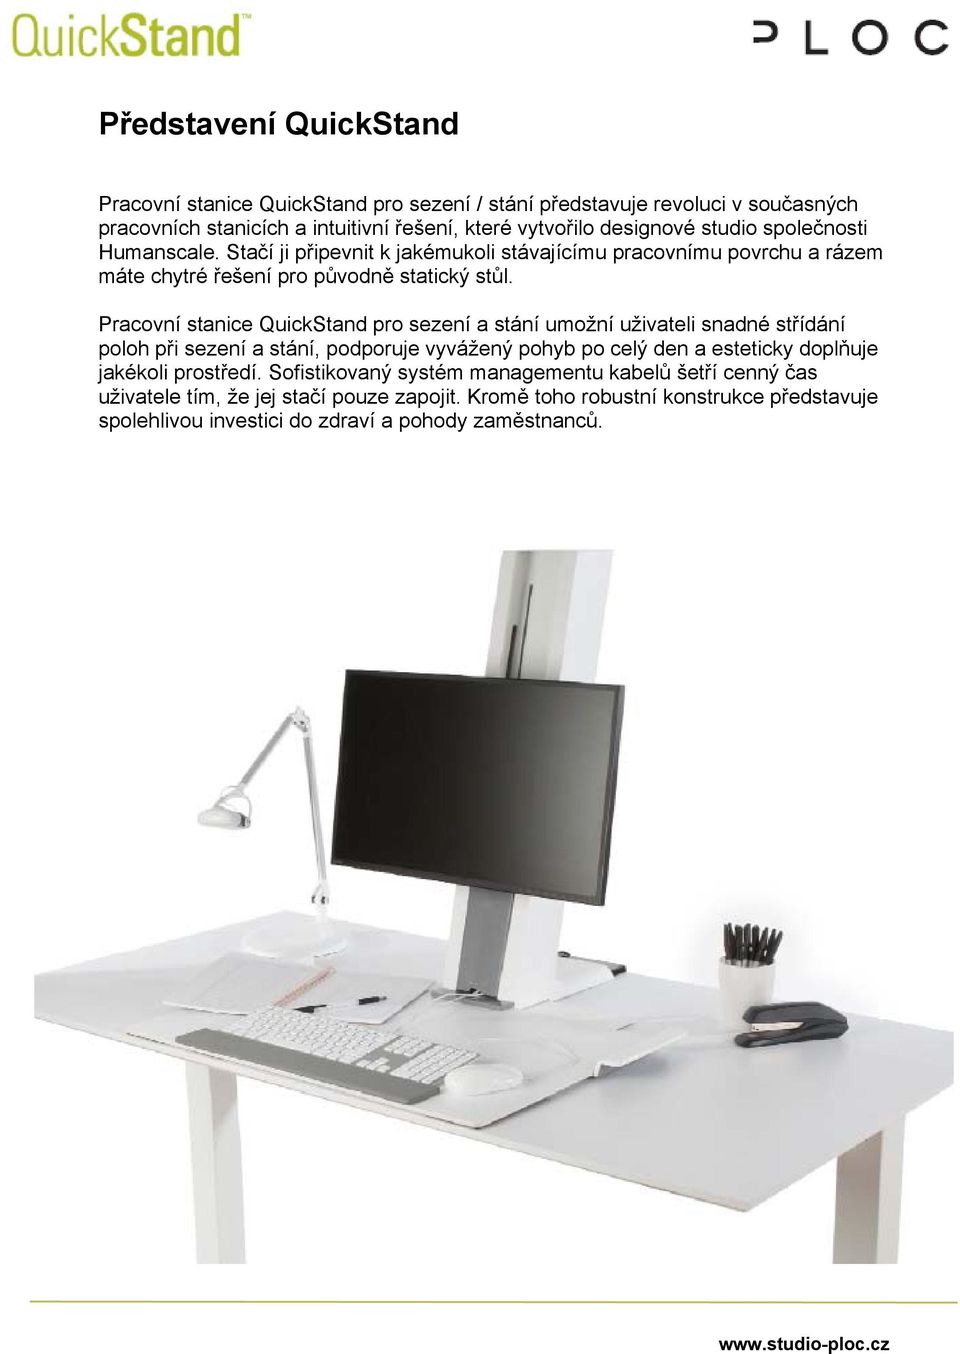 Pracovní stanice QuickStand pro sezení a stání umožní uživateli snadné střídání poloh při sezení a stání, podporuje vyvážený pohyb po celý den a esteticky doplňuje jakékoli